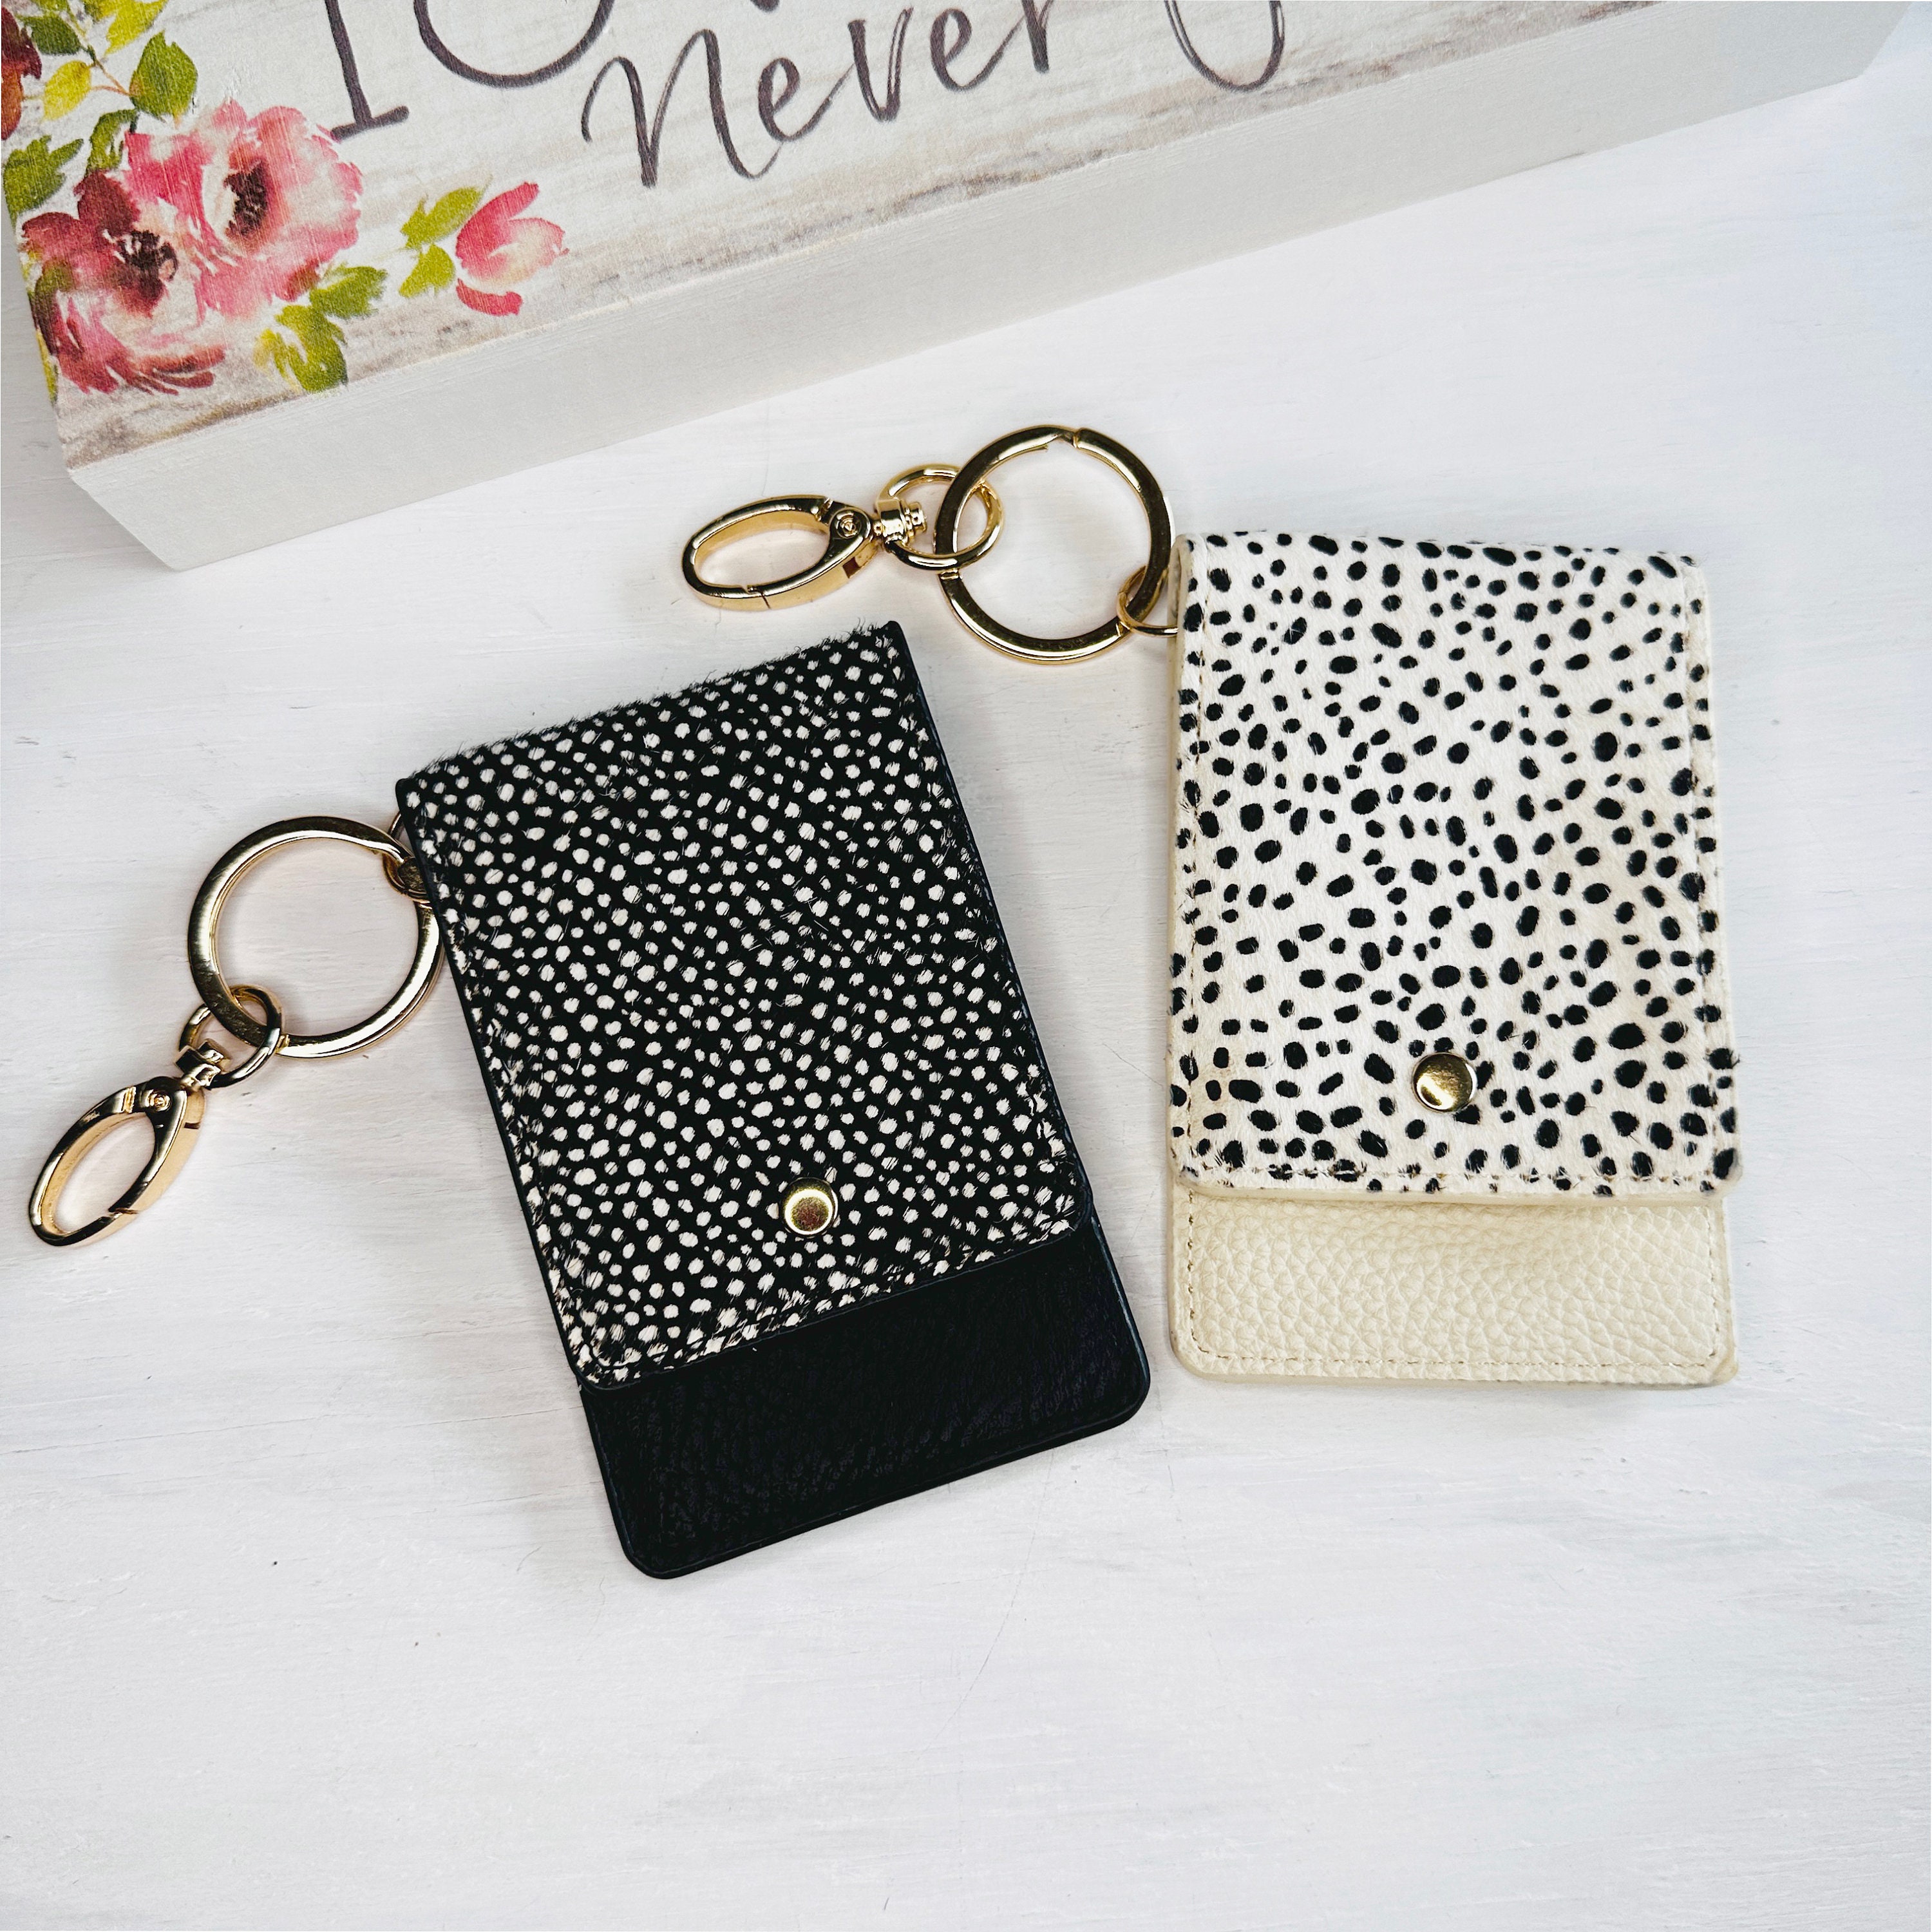 Leopard Print Design Leather Credit Card Case / Genuine Designer